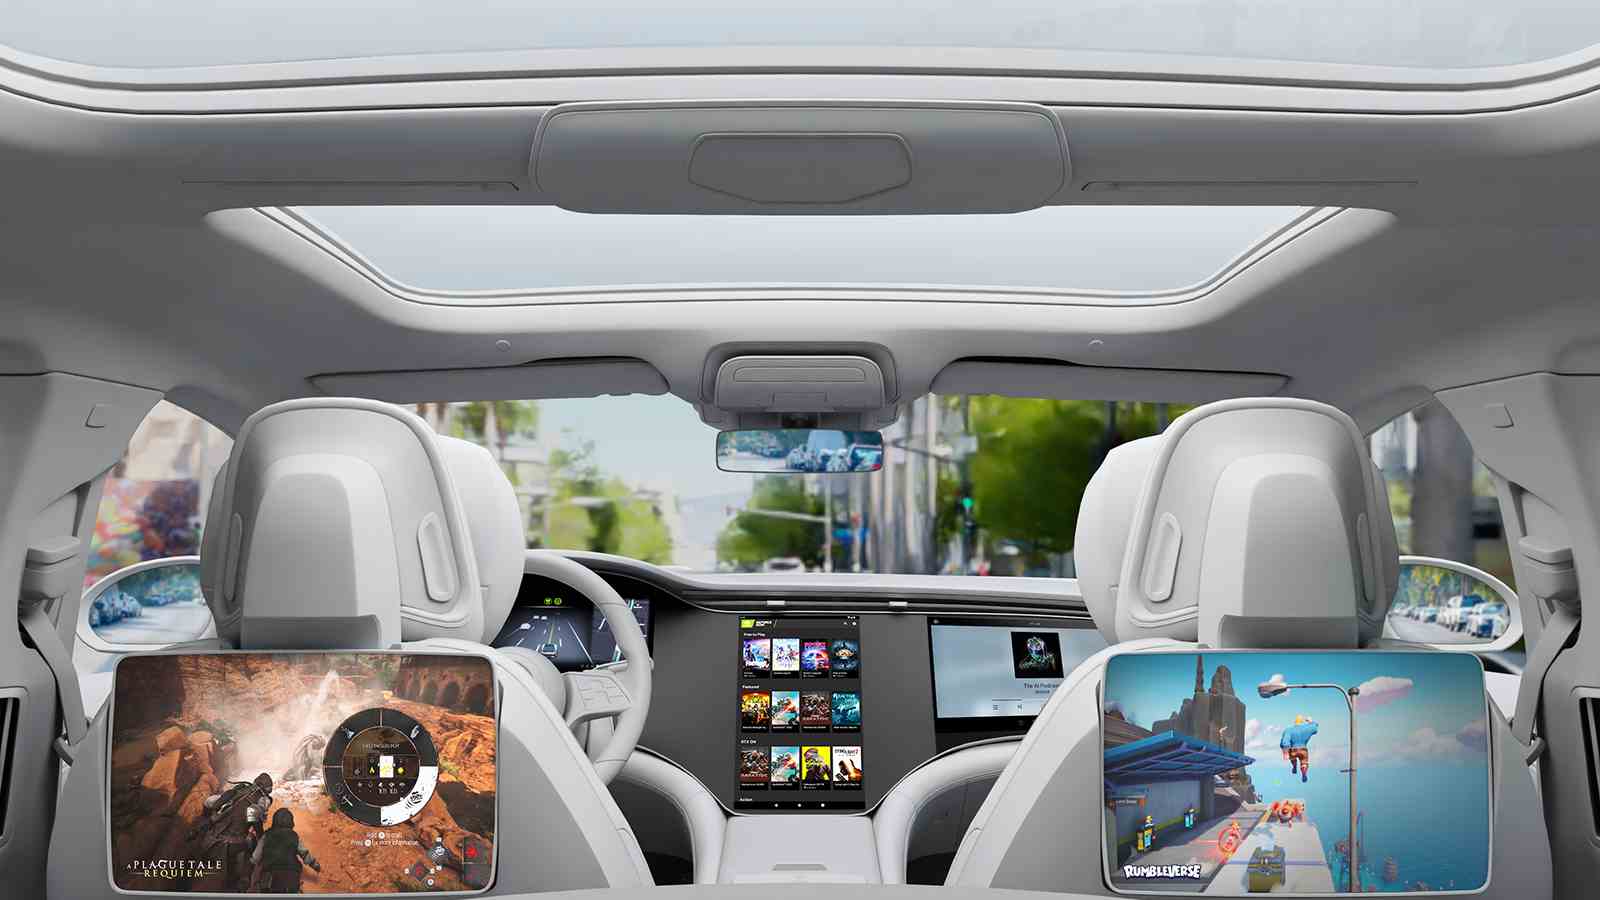 Photo promotionnelle Nvidia GeForce Now dans les voitures, gracieuseté de Nvidia